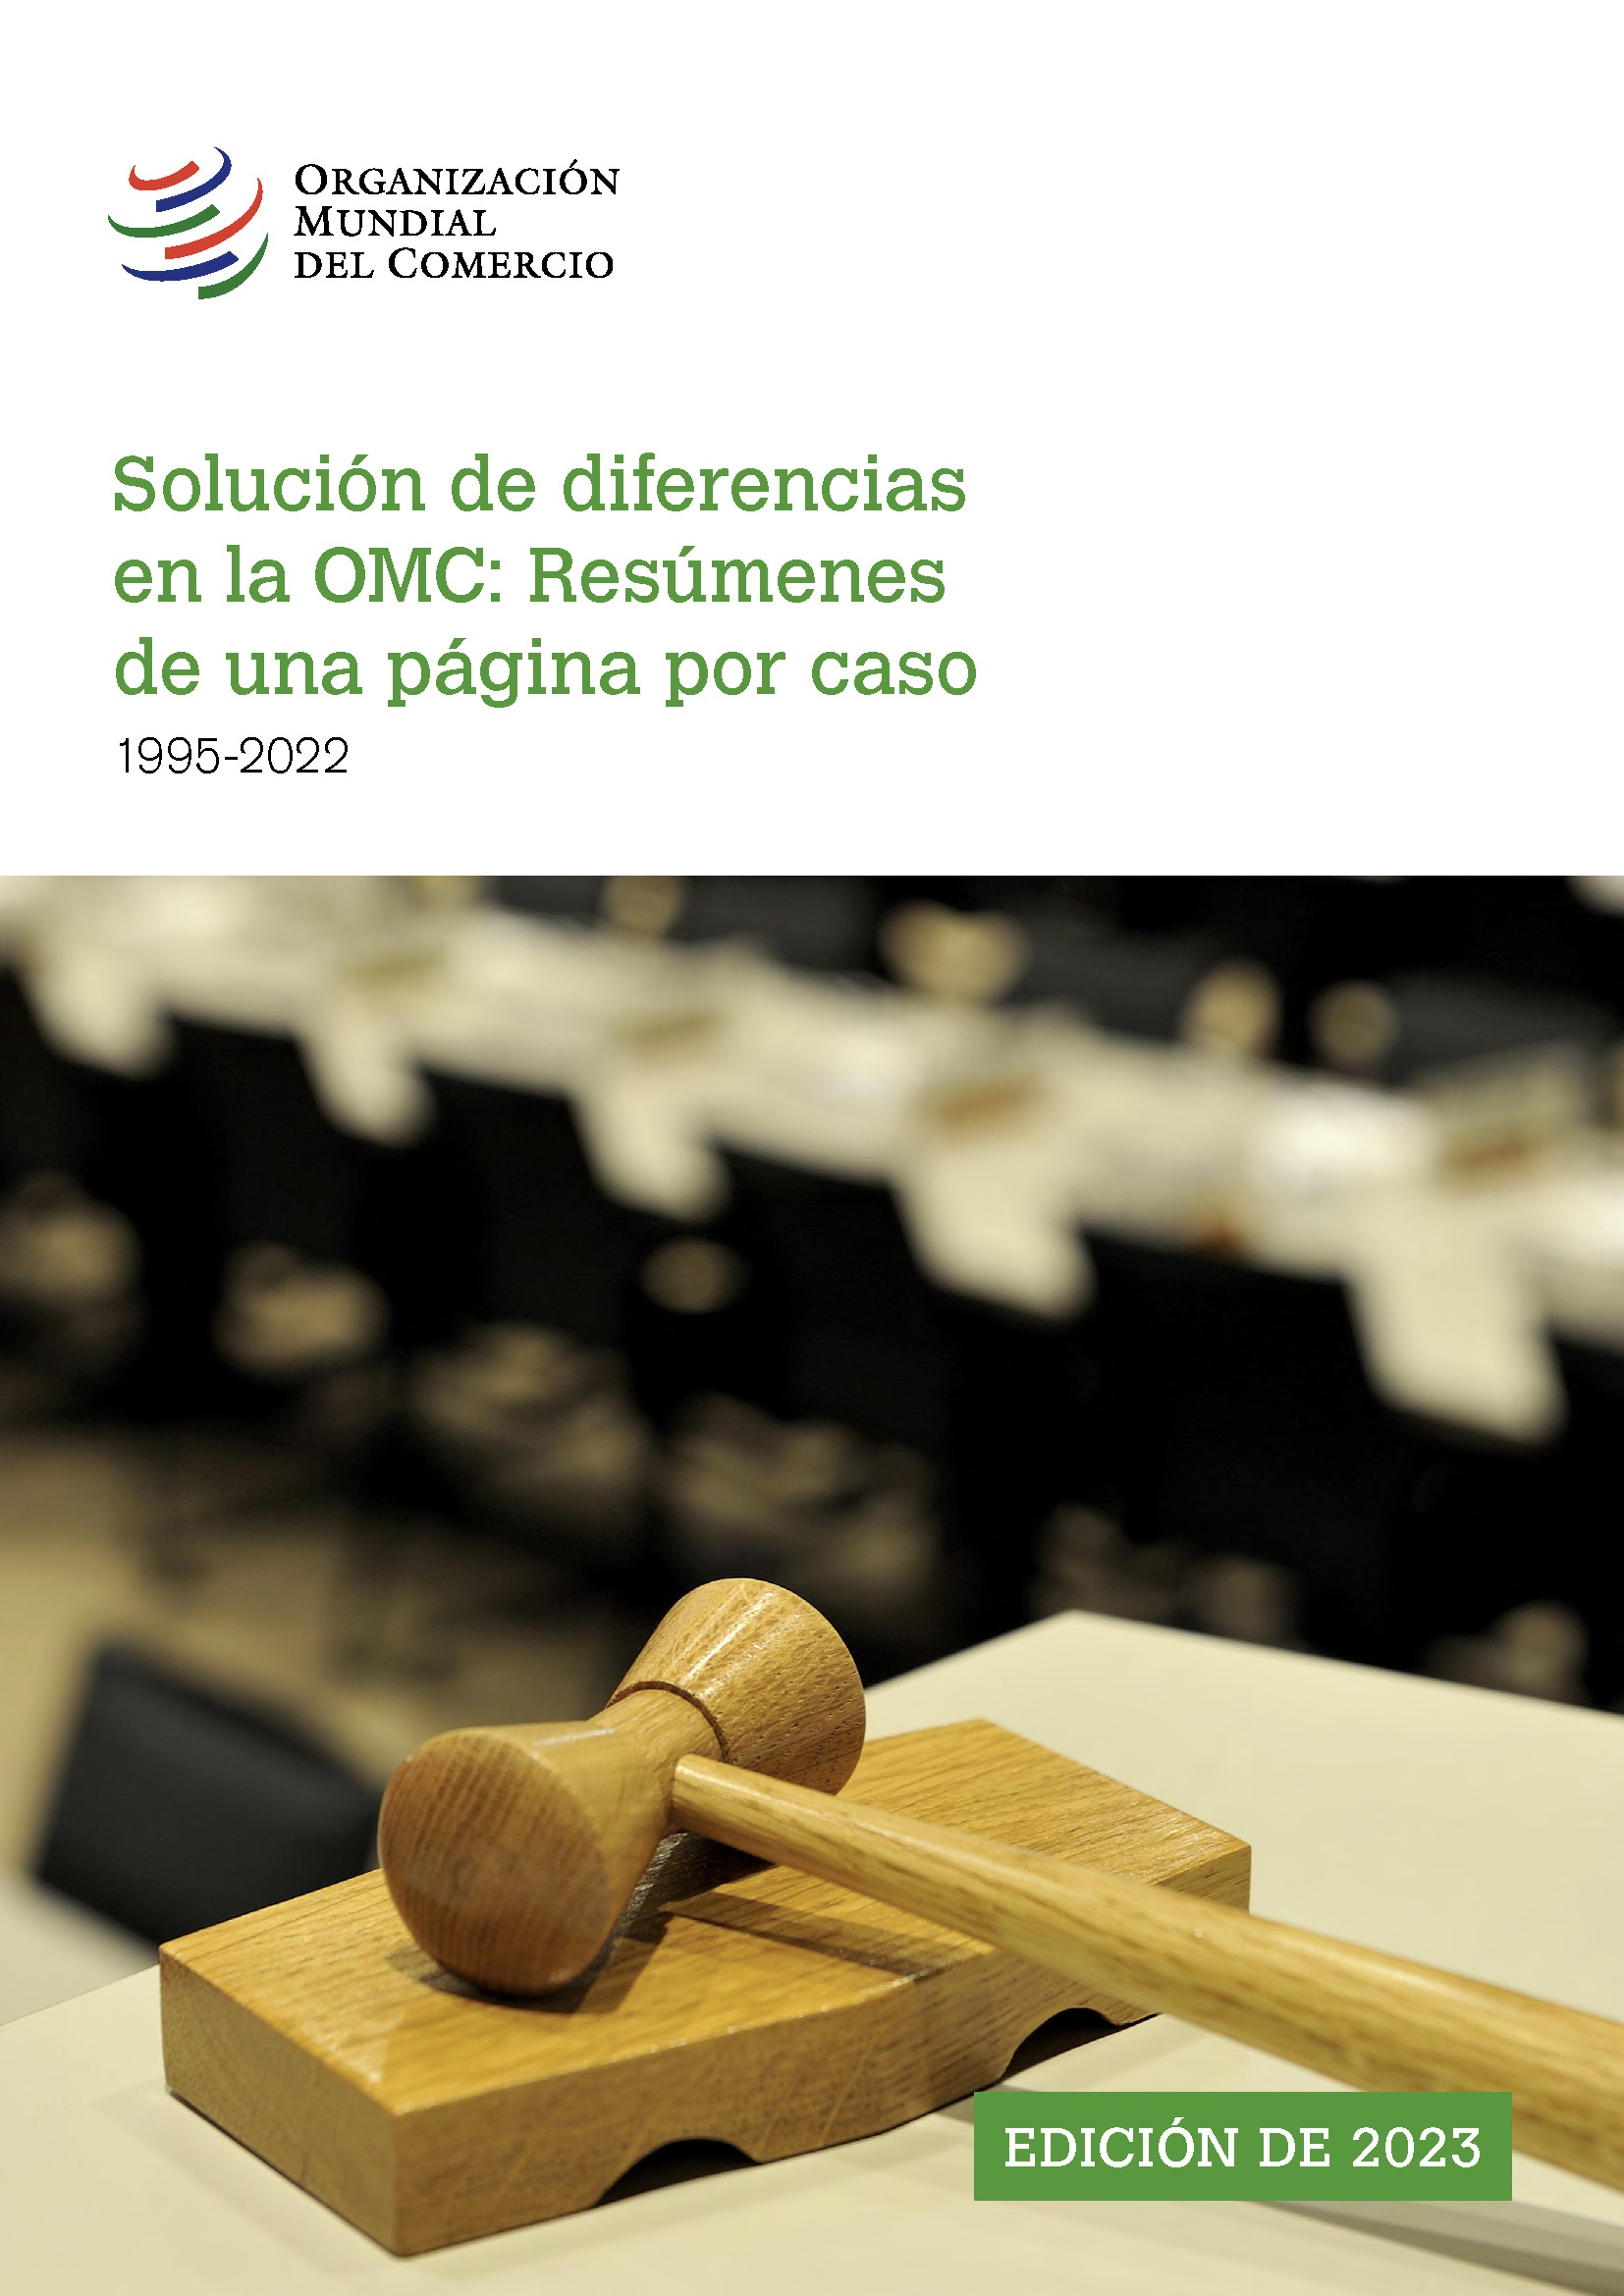 image of Solución de diferencias en la OMC: Resúmenes de una página por caso (1995-2022)